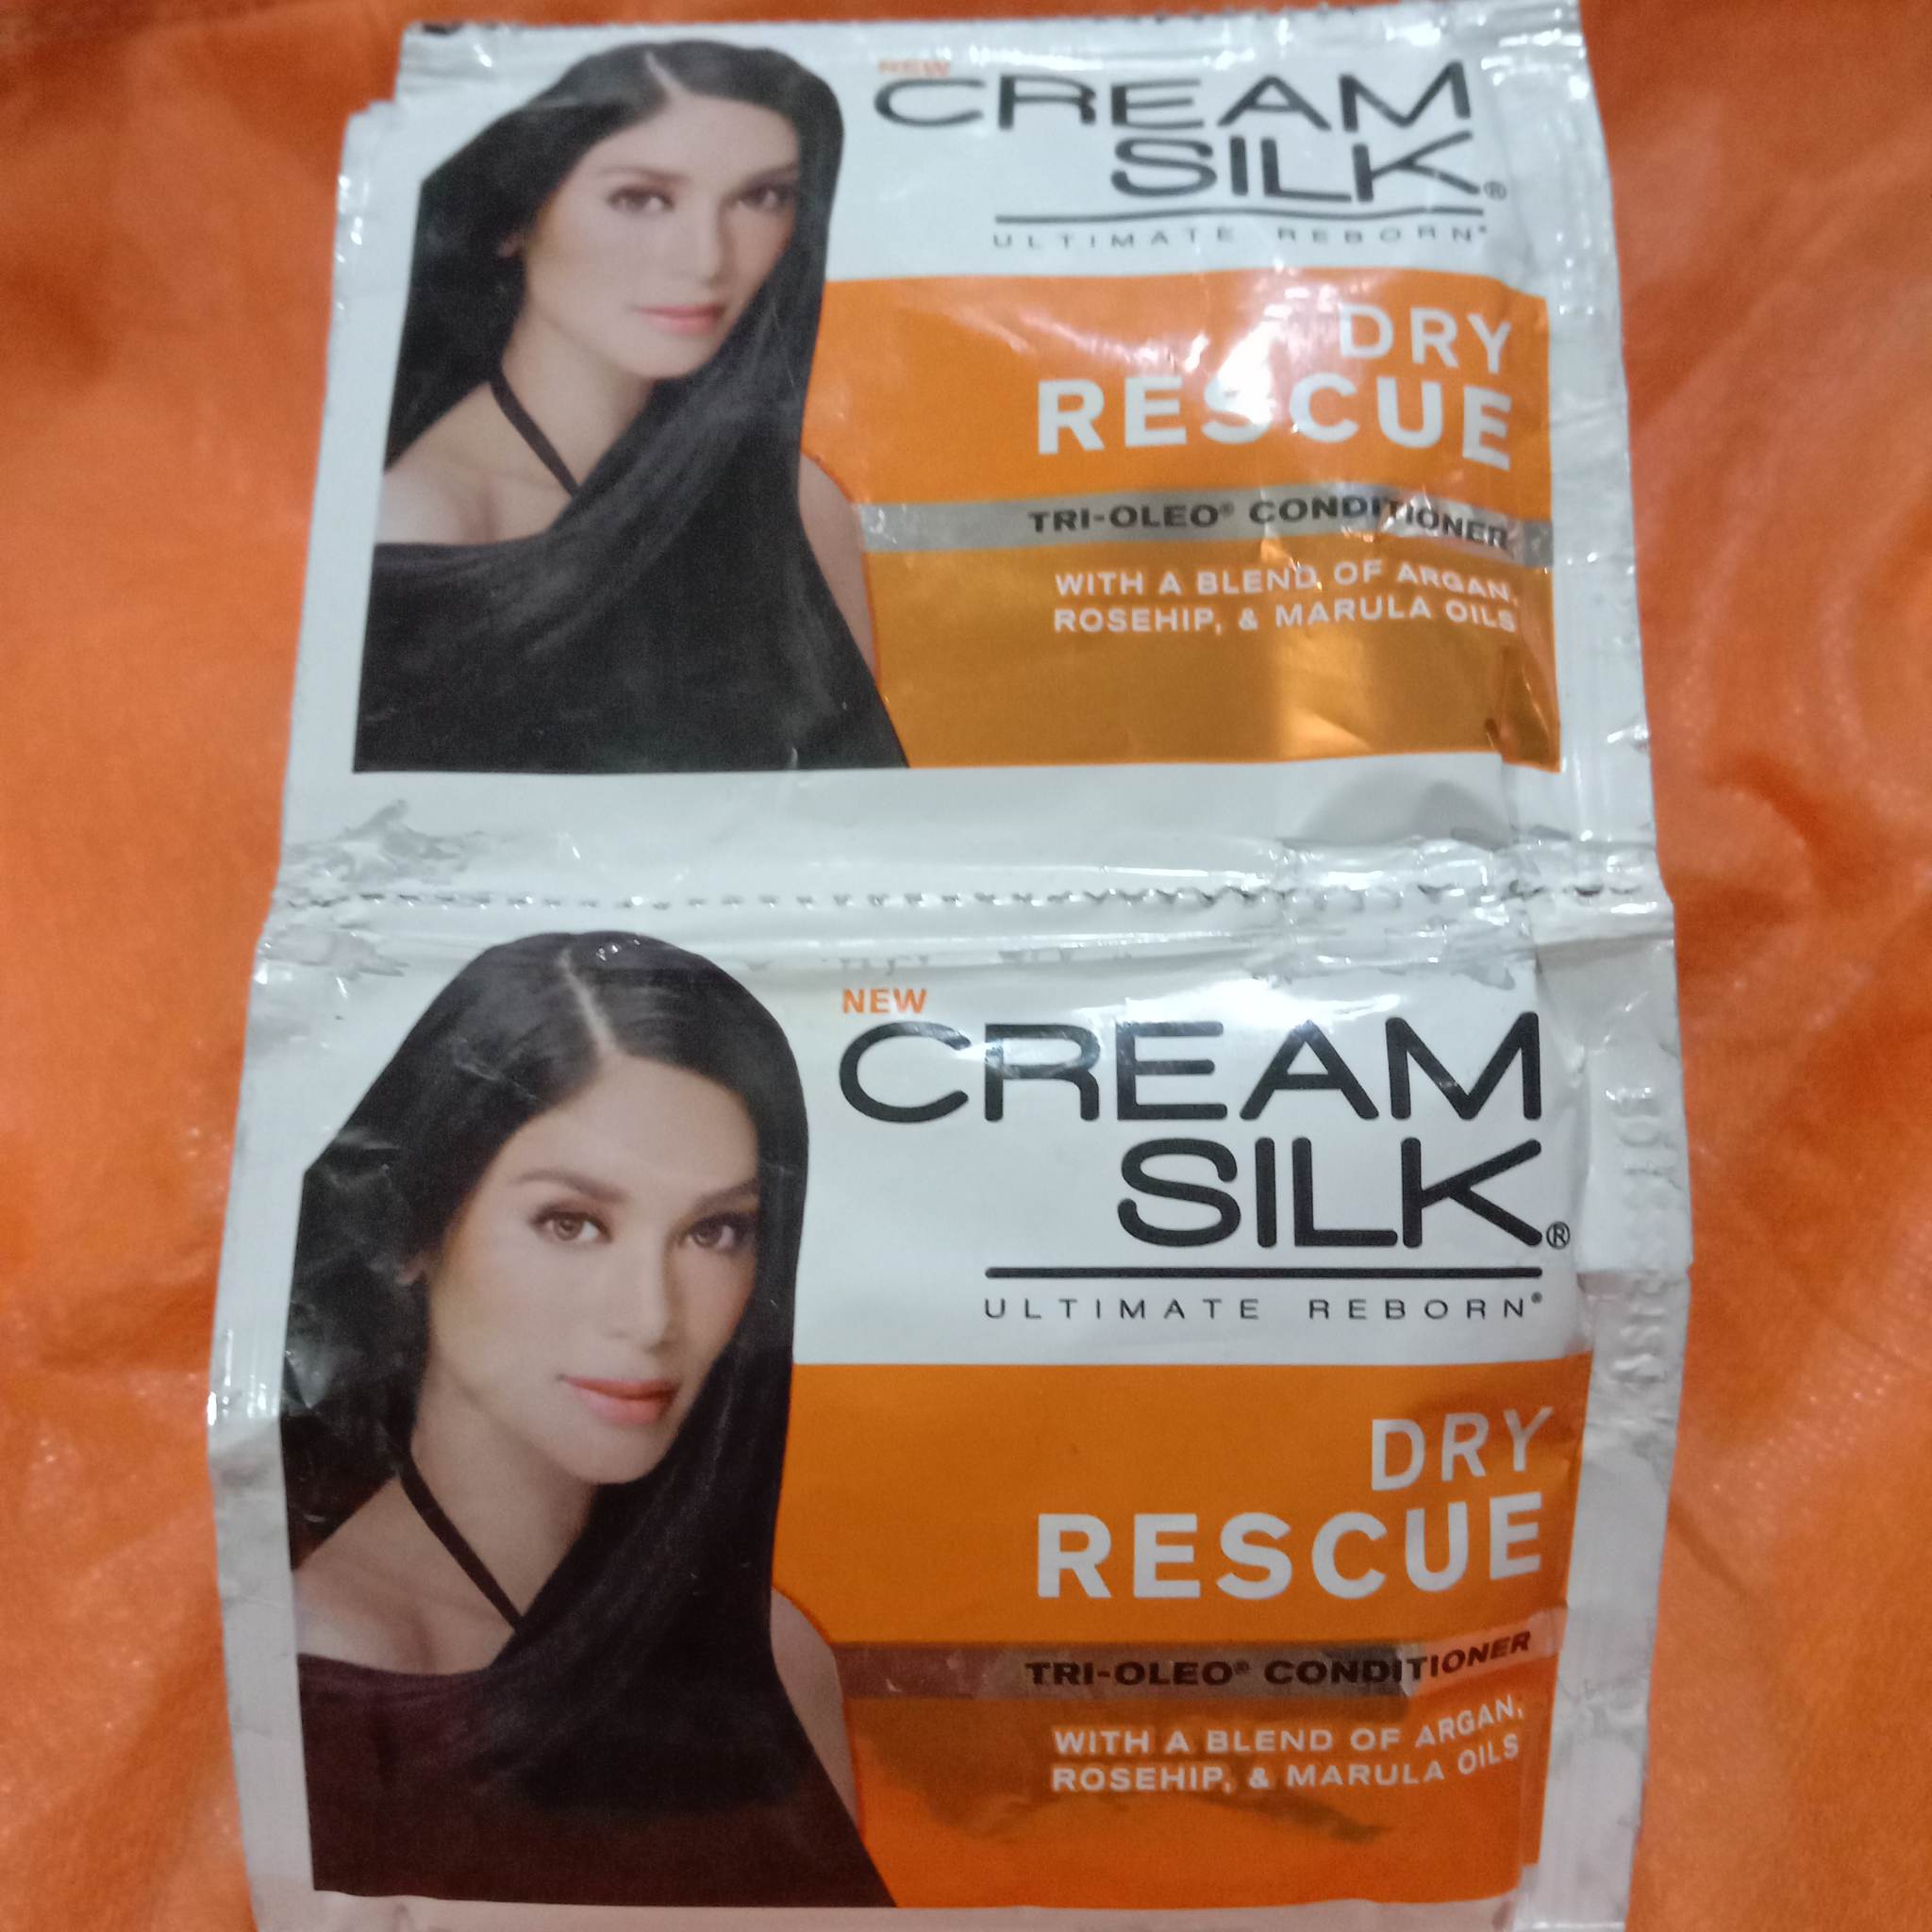 Cream Silk Ultimate Reborn Dry Rescue Conditioner